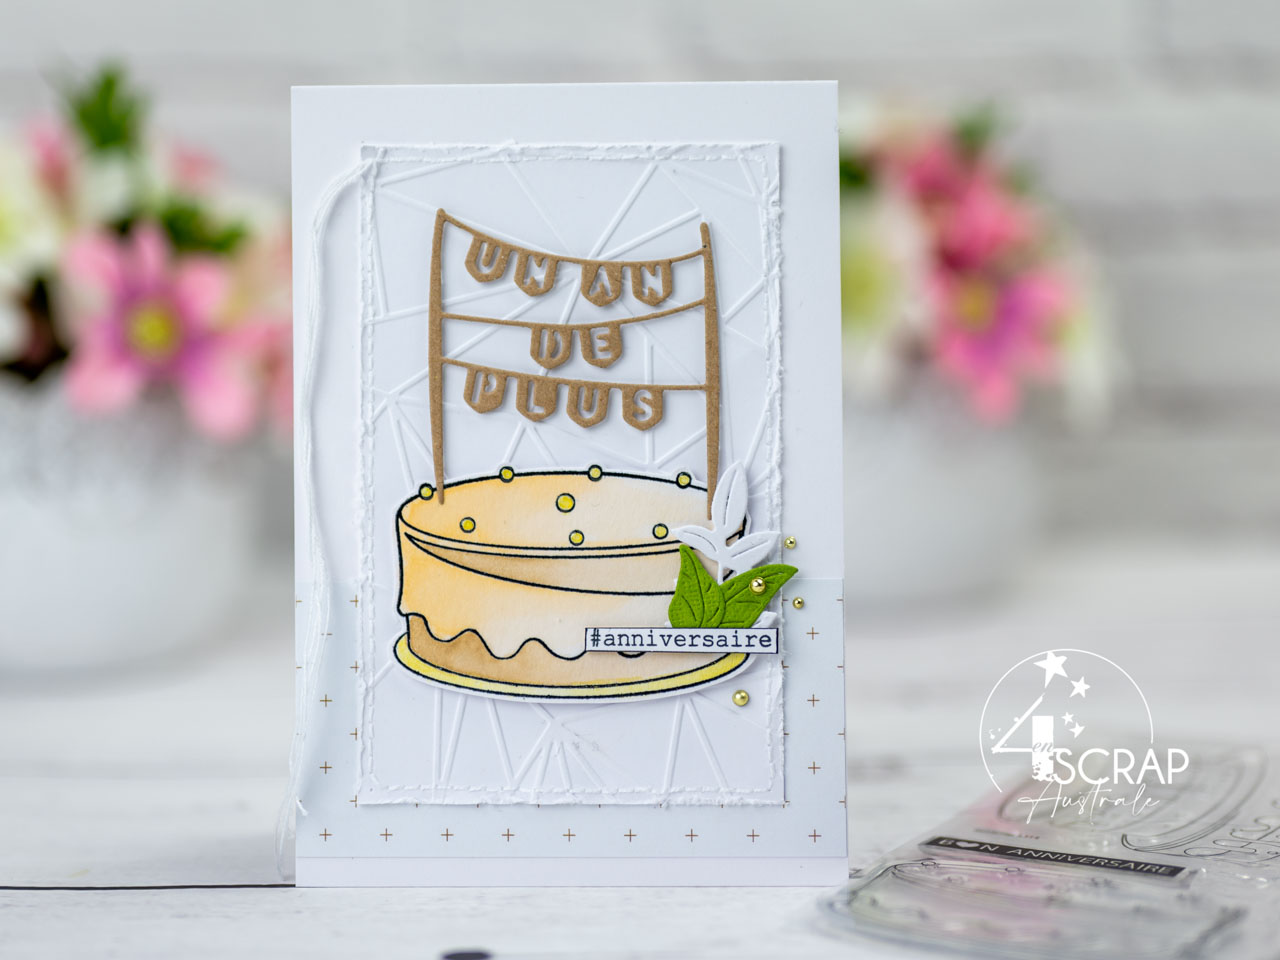 Création d'une carte d'anniversaire avec un gros gâteau mis en couleur à l'aquarelle, topper texte, hashtag anniversaire et quelques feuillages pour la collection anniversaire de 4enscrap.